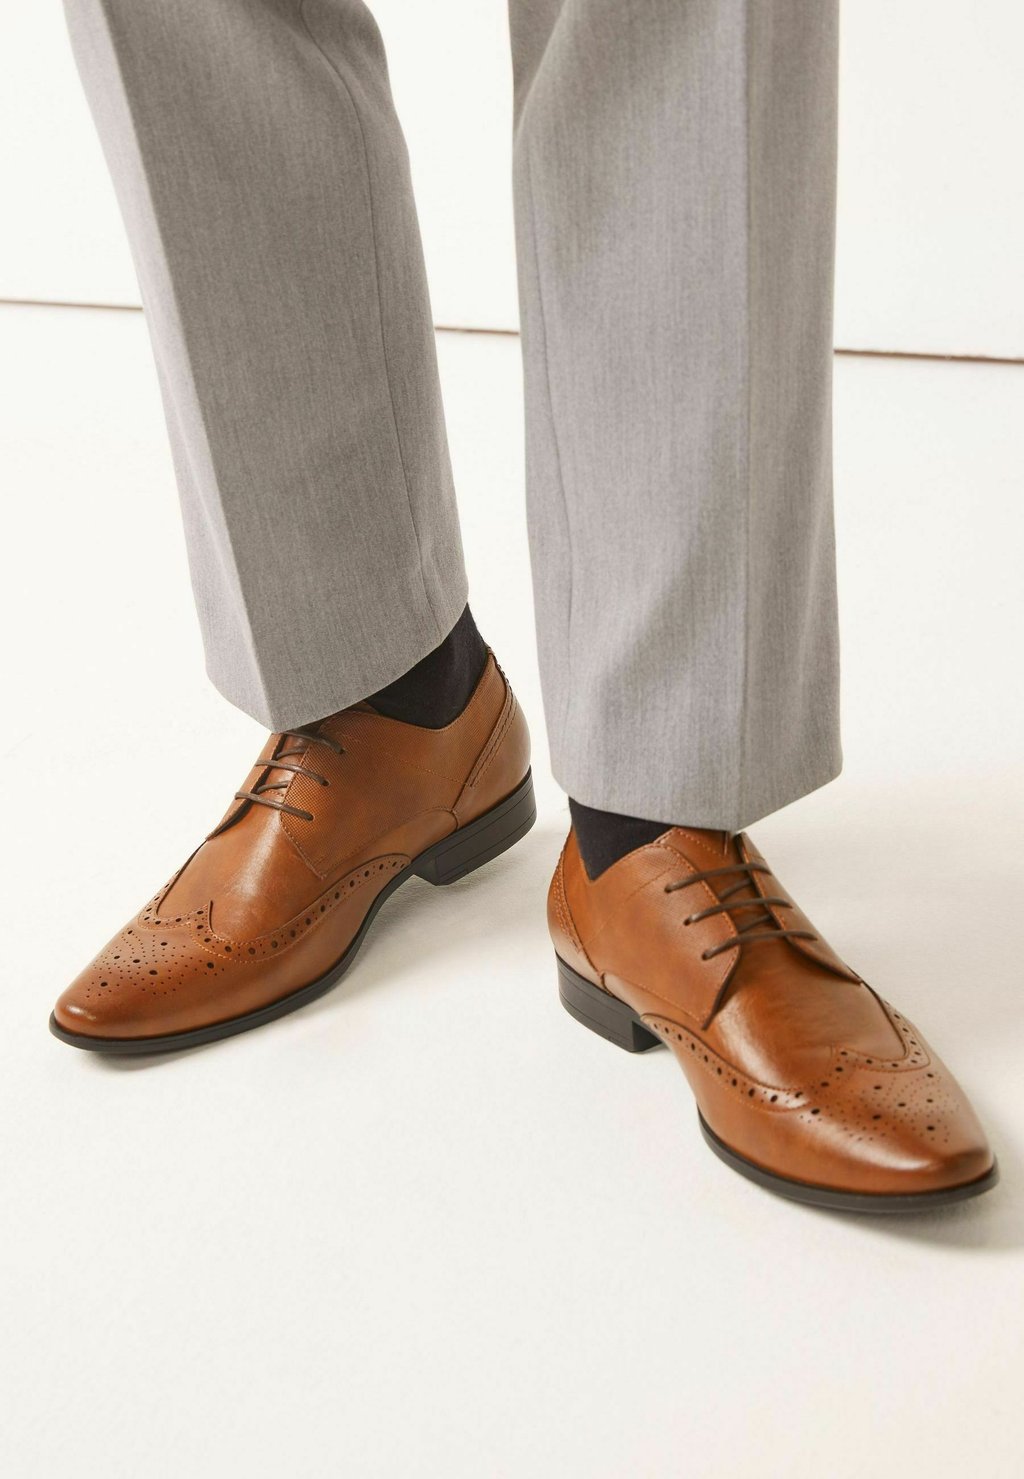 Элегантные туфли на шнуровке Wide Fit Brogue Shoes Next, цвет tan brown